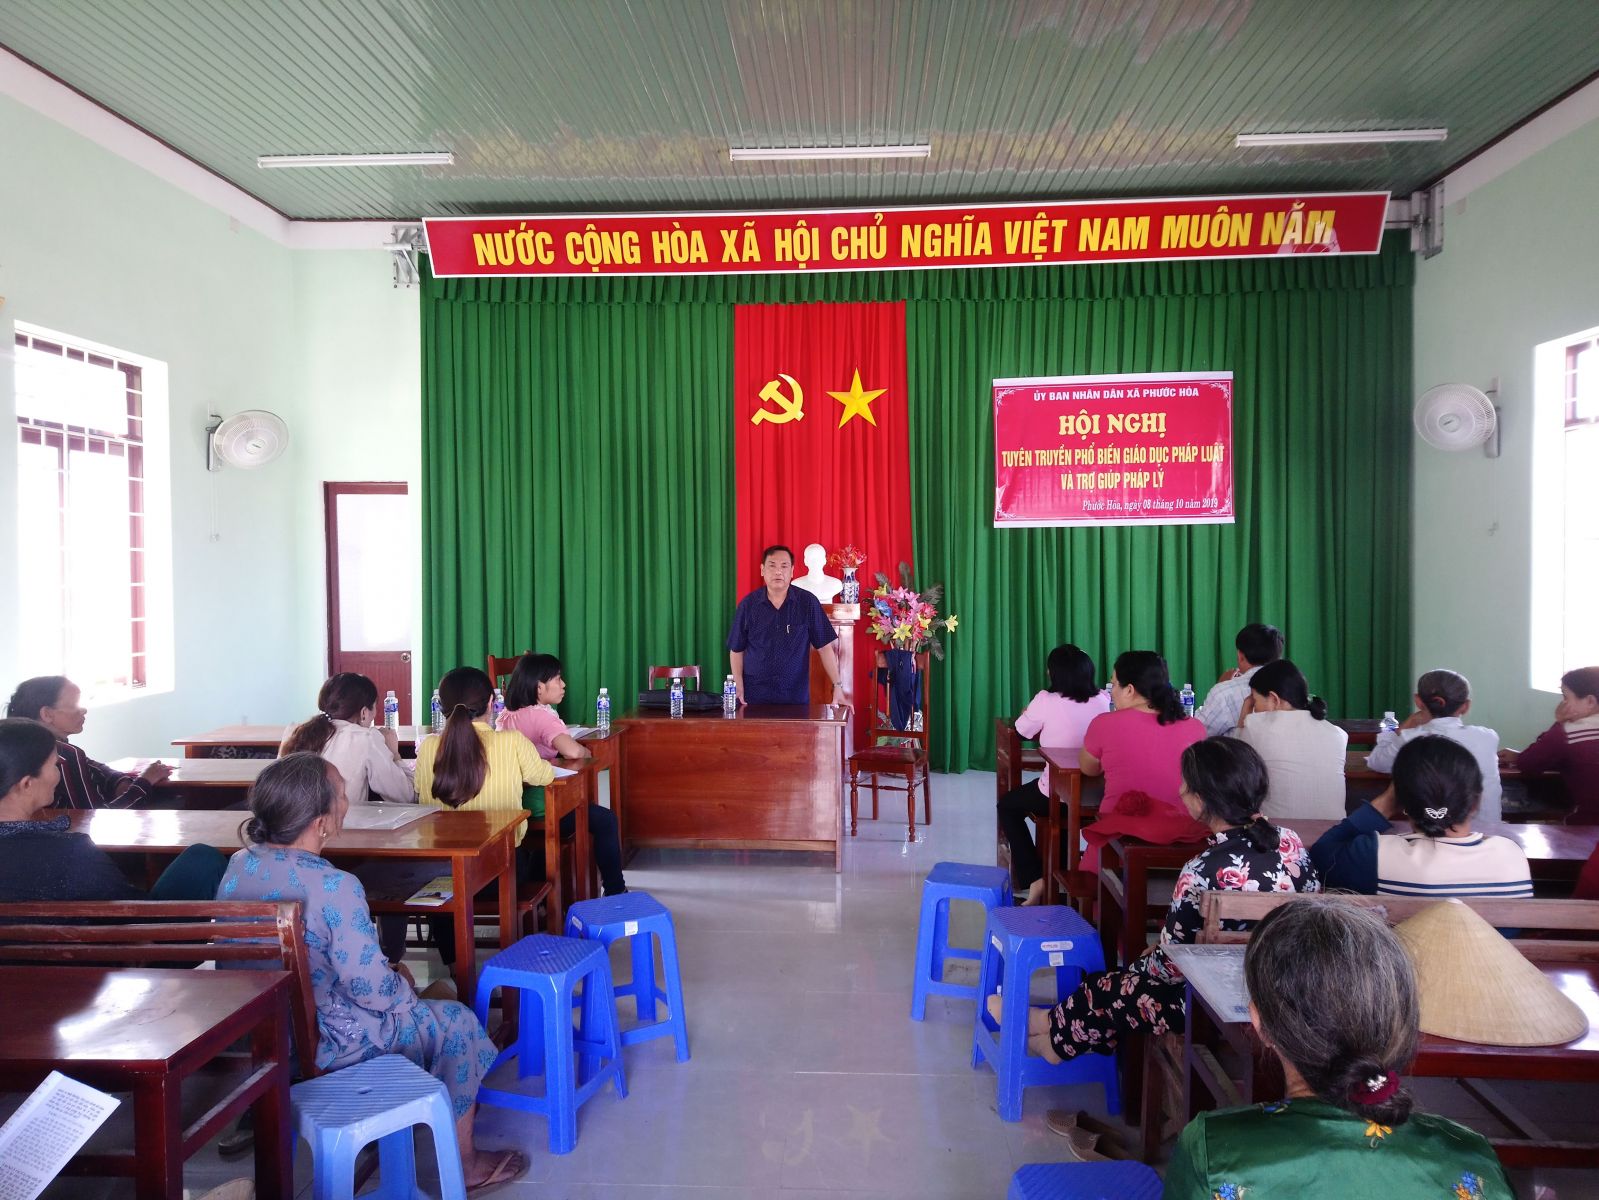 Tổ chức trợ giúp pháp lý ngoài trụ sở thôn Kim Tây, xã Phước Hòa, huyện Tuy Phước